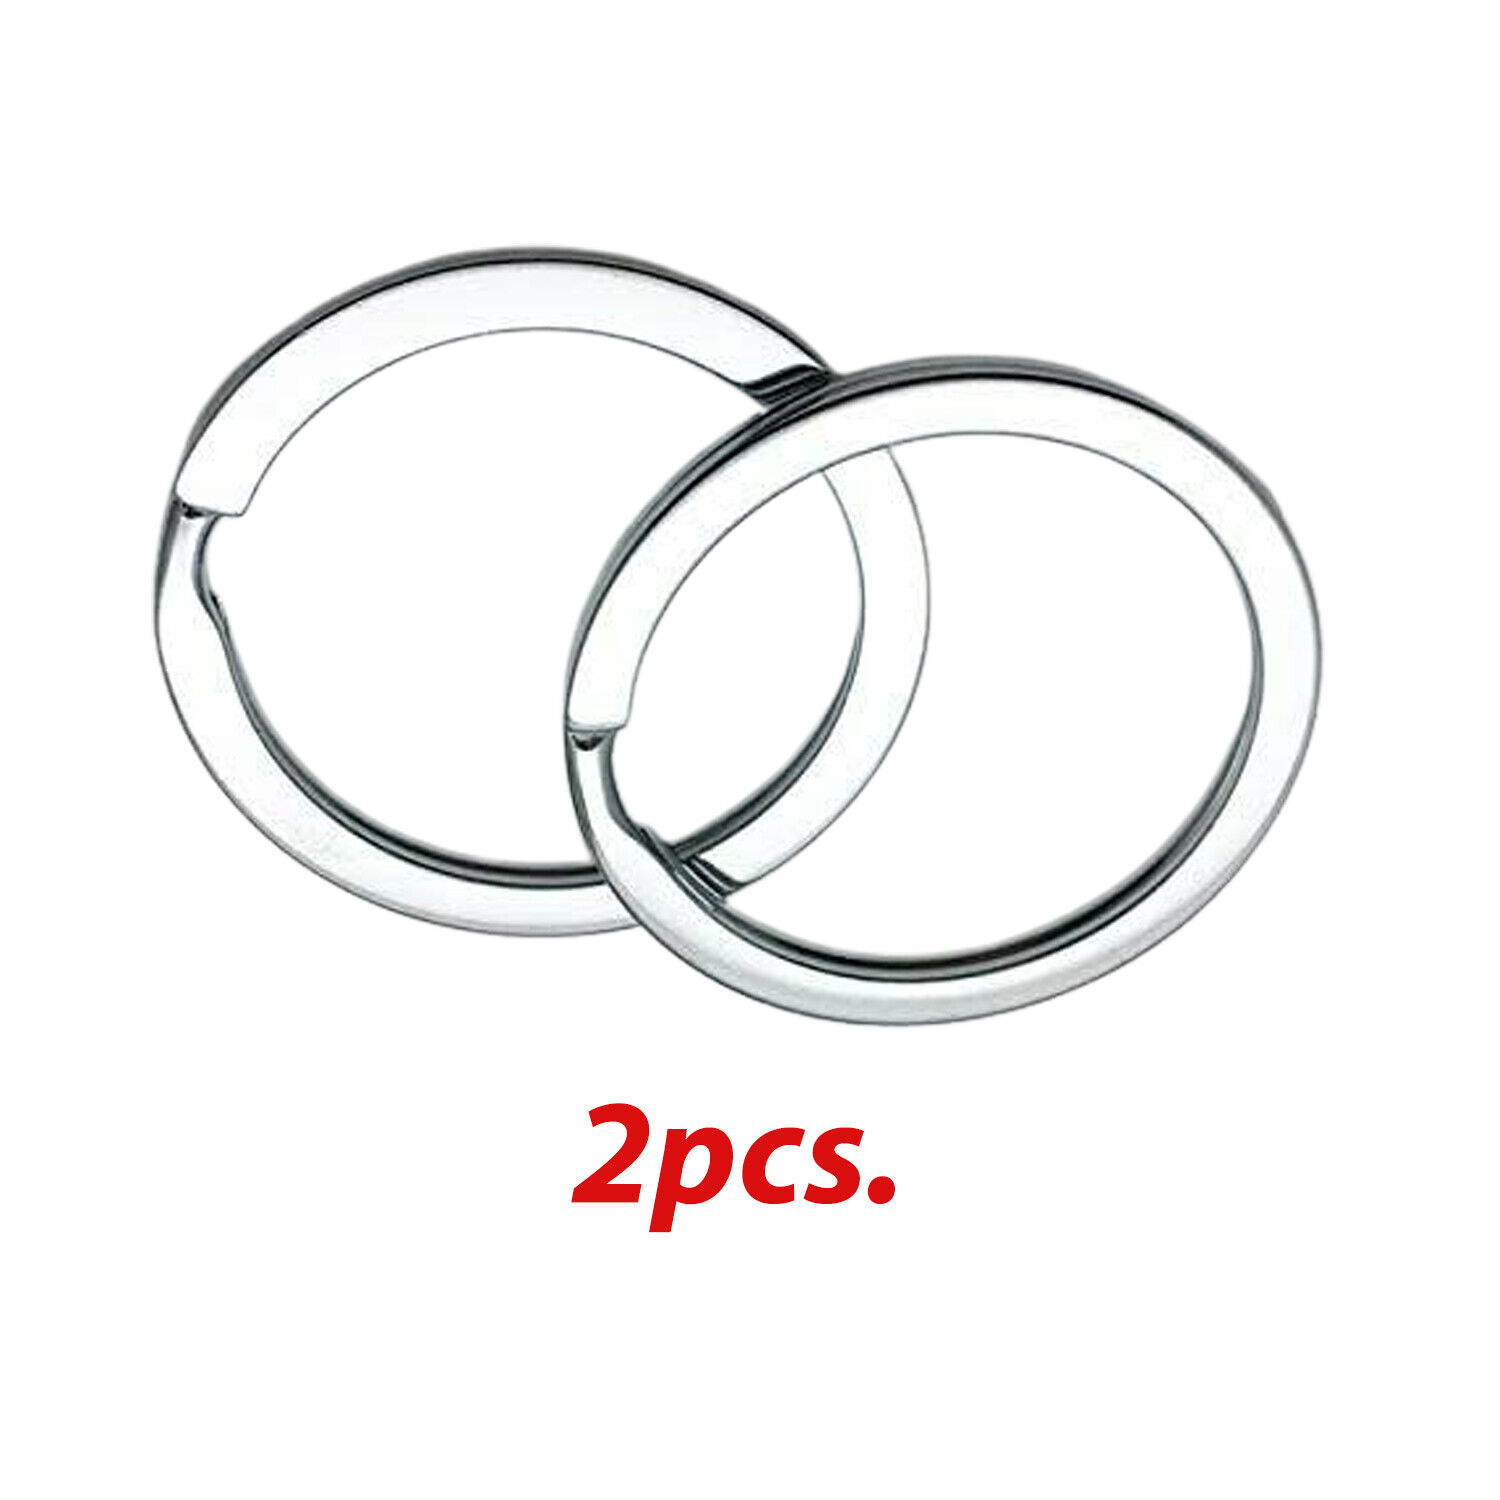 2 Pack Rustproof 30mm Flat Key Rings Chains Split Ring Metal Steel Silver Без бренда